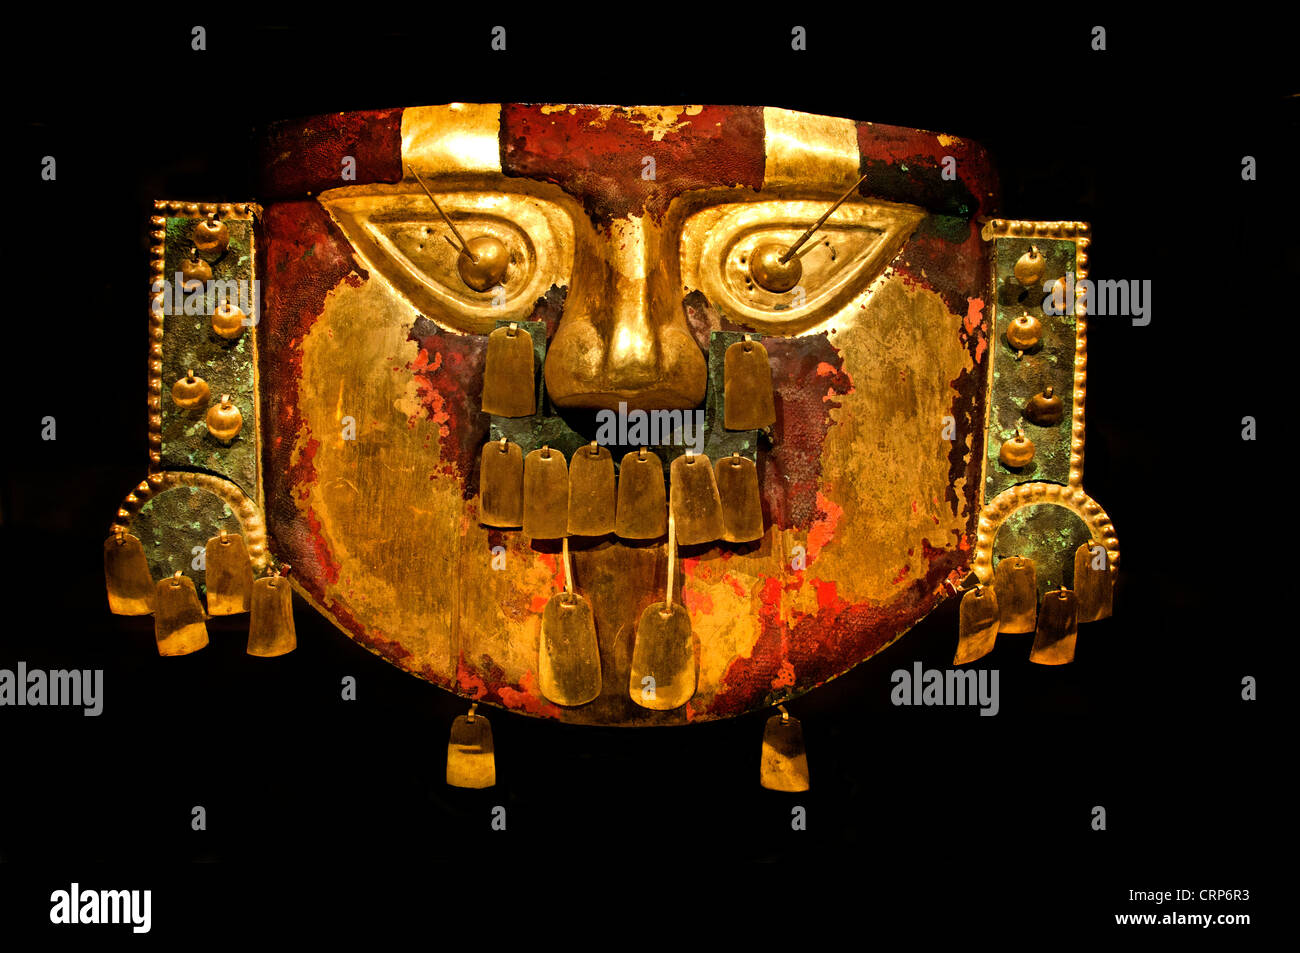 Ancient Golden Inca Mask funéraire Lambayeque (Sicán) du Xe au 12ème siècle Pérou La culture péruvienne Banque D'Images